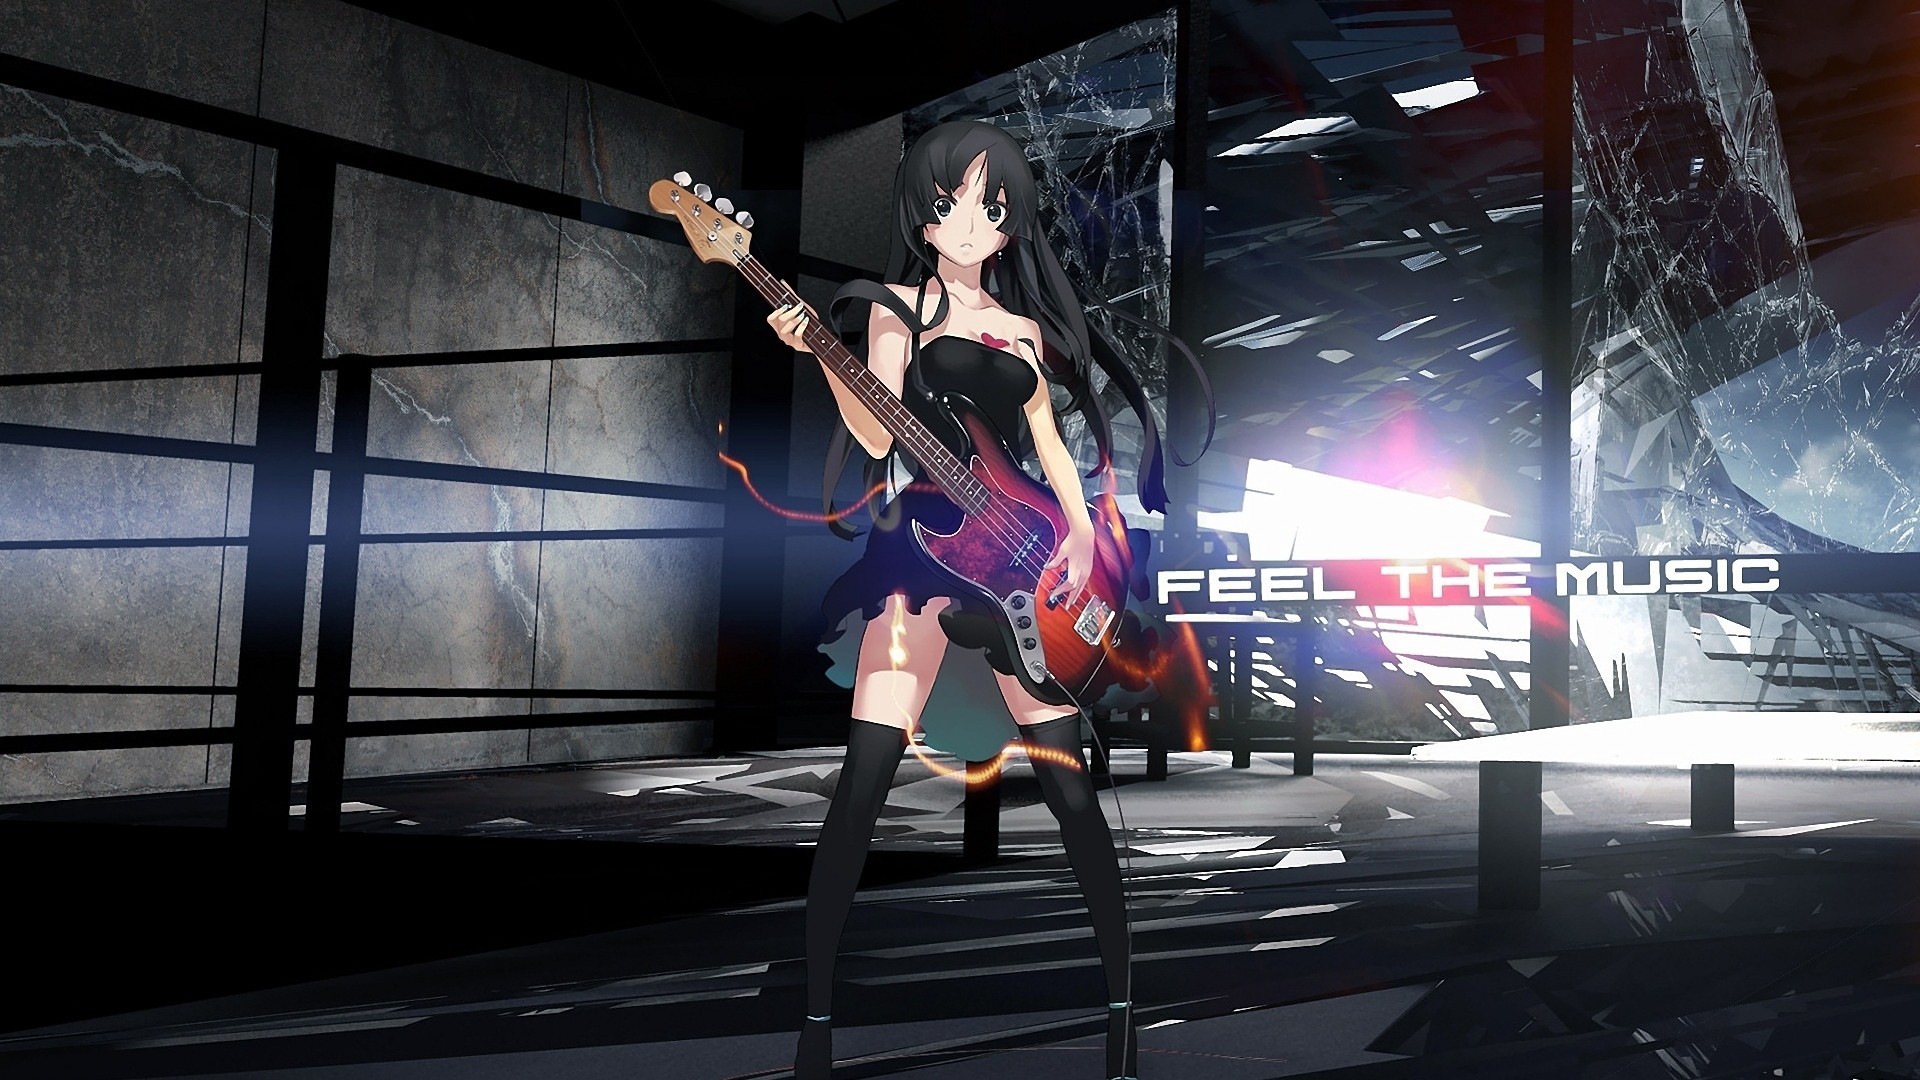 Akiyama Mio Anime Girl With Guitar Wallpapers And Images